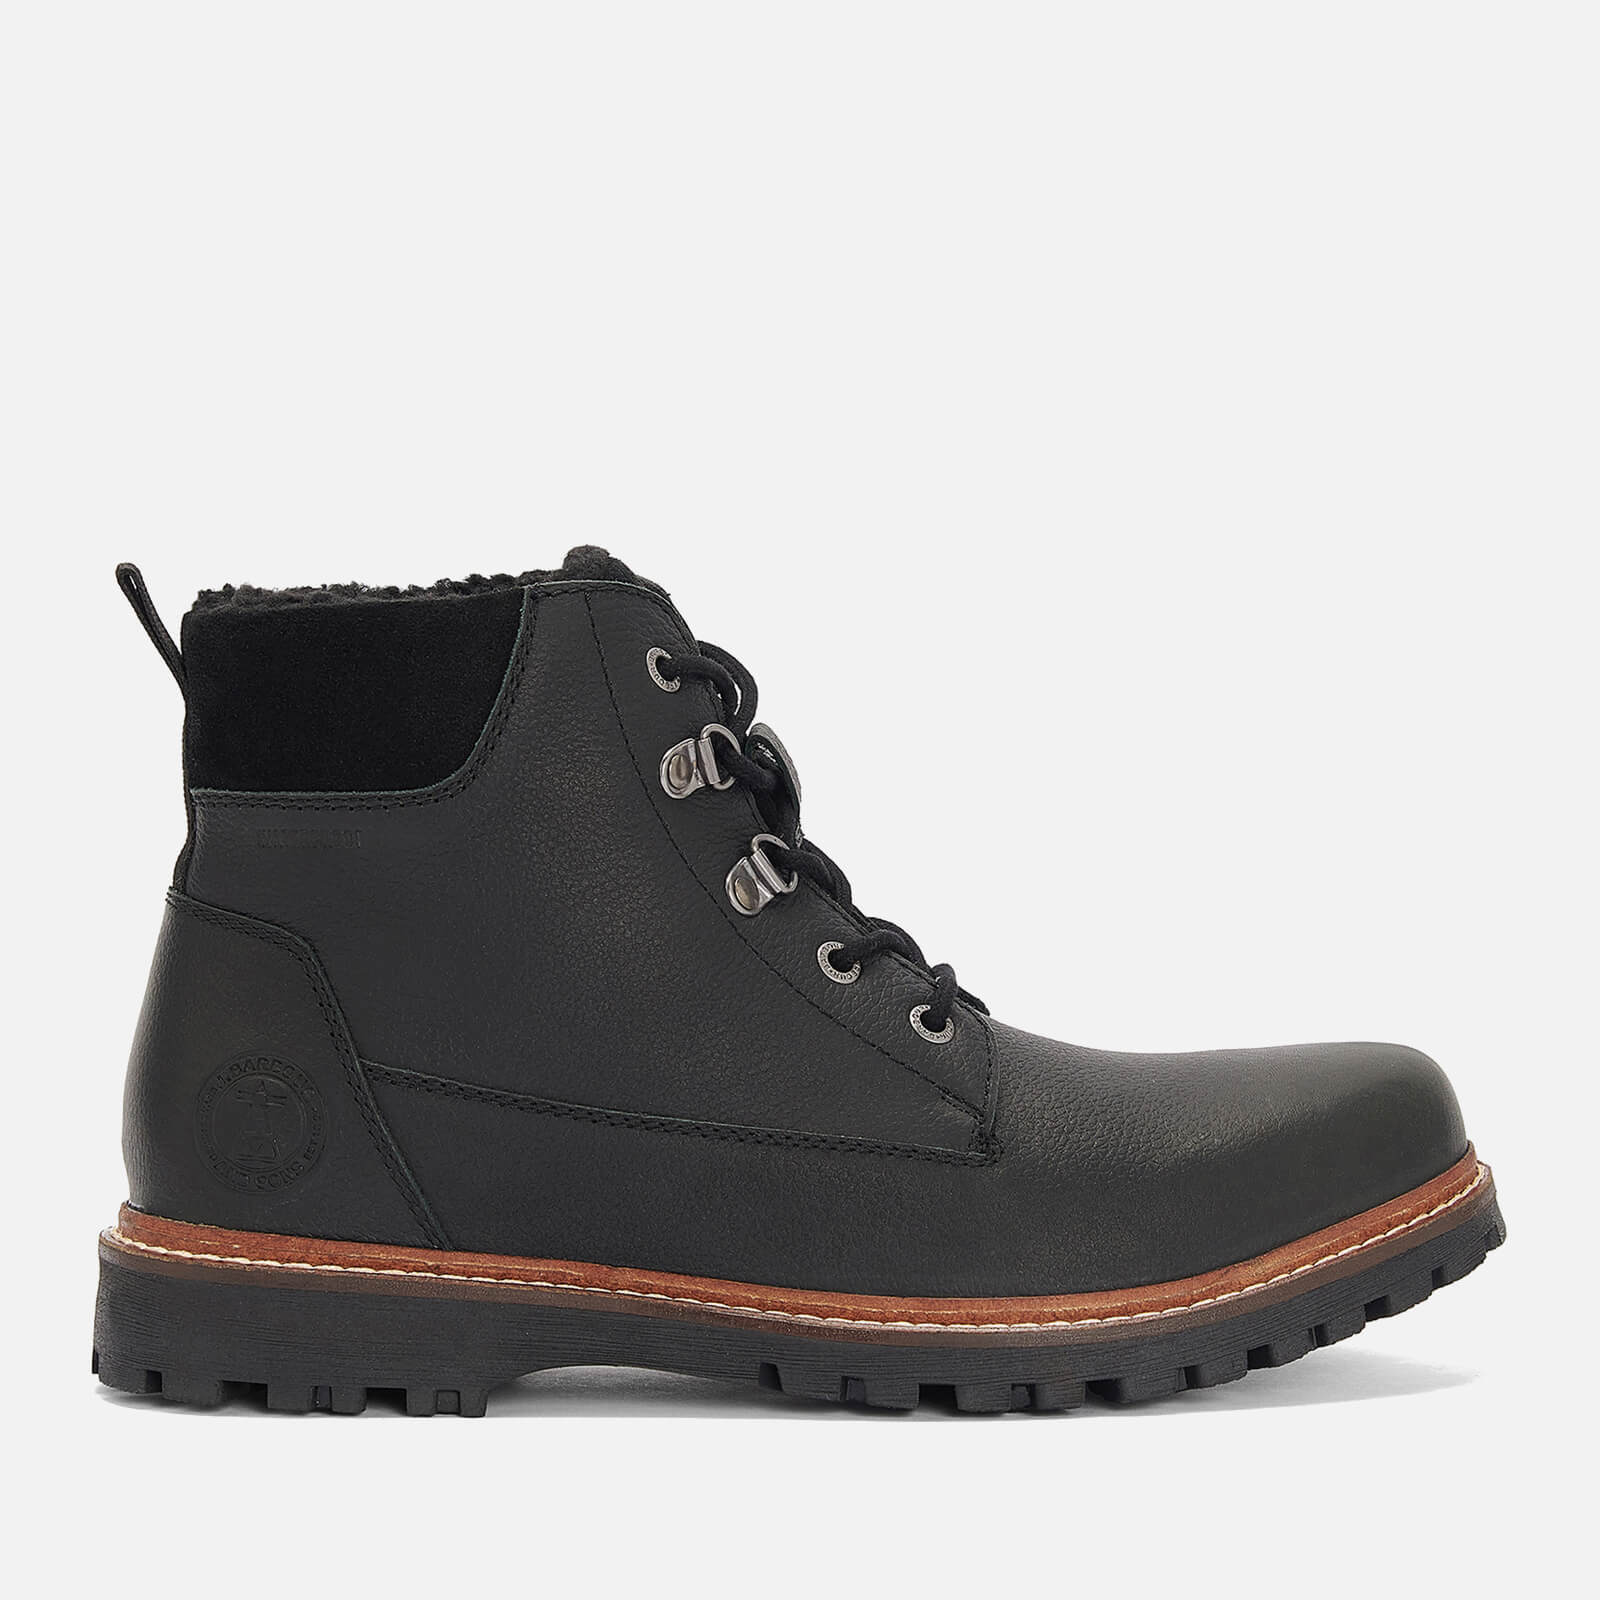 Barbour Men’s Storr Waterproof Leather Boots